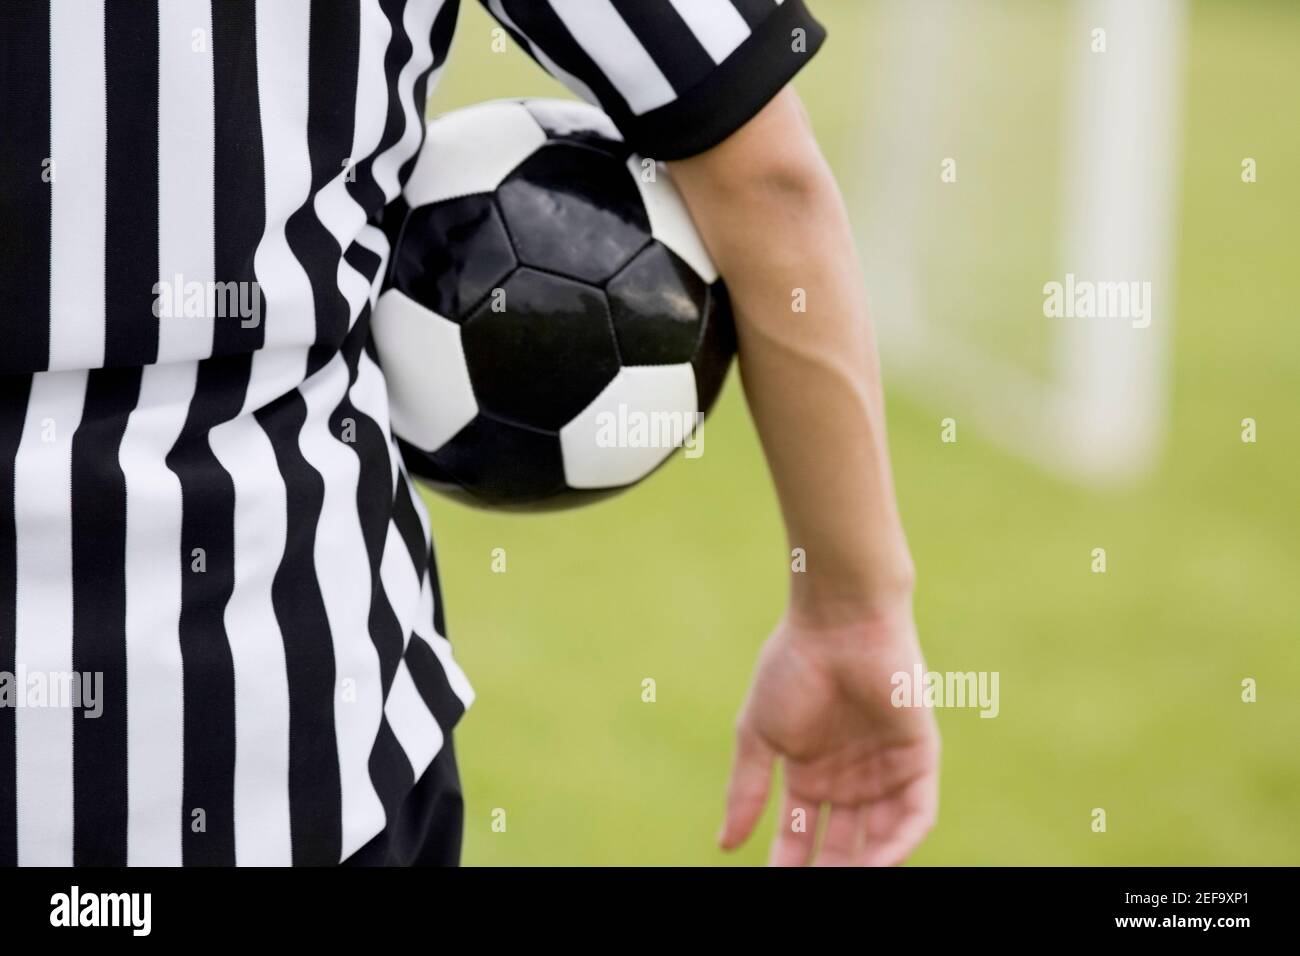 Mittelansicht eines Schiedsrichters mit einem Fußball Unter seinem Arm Stockfoto